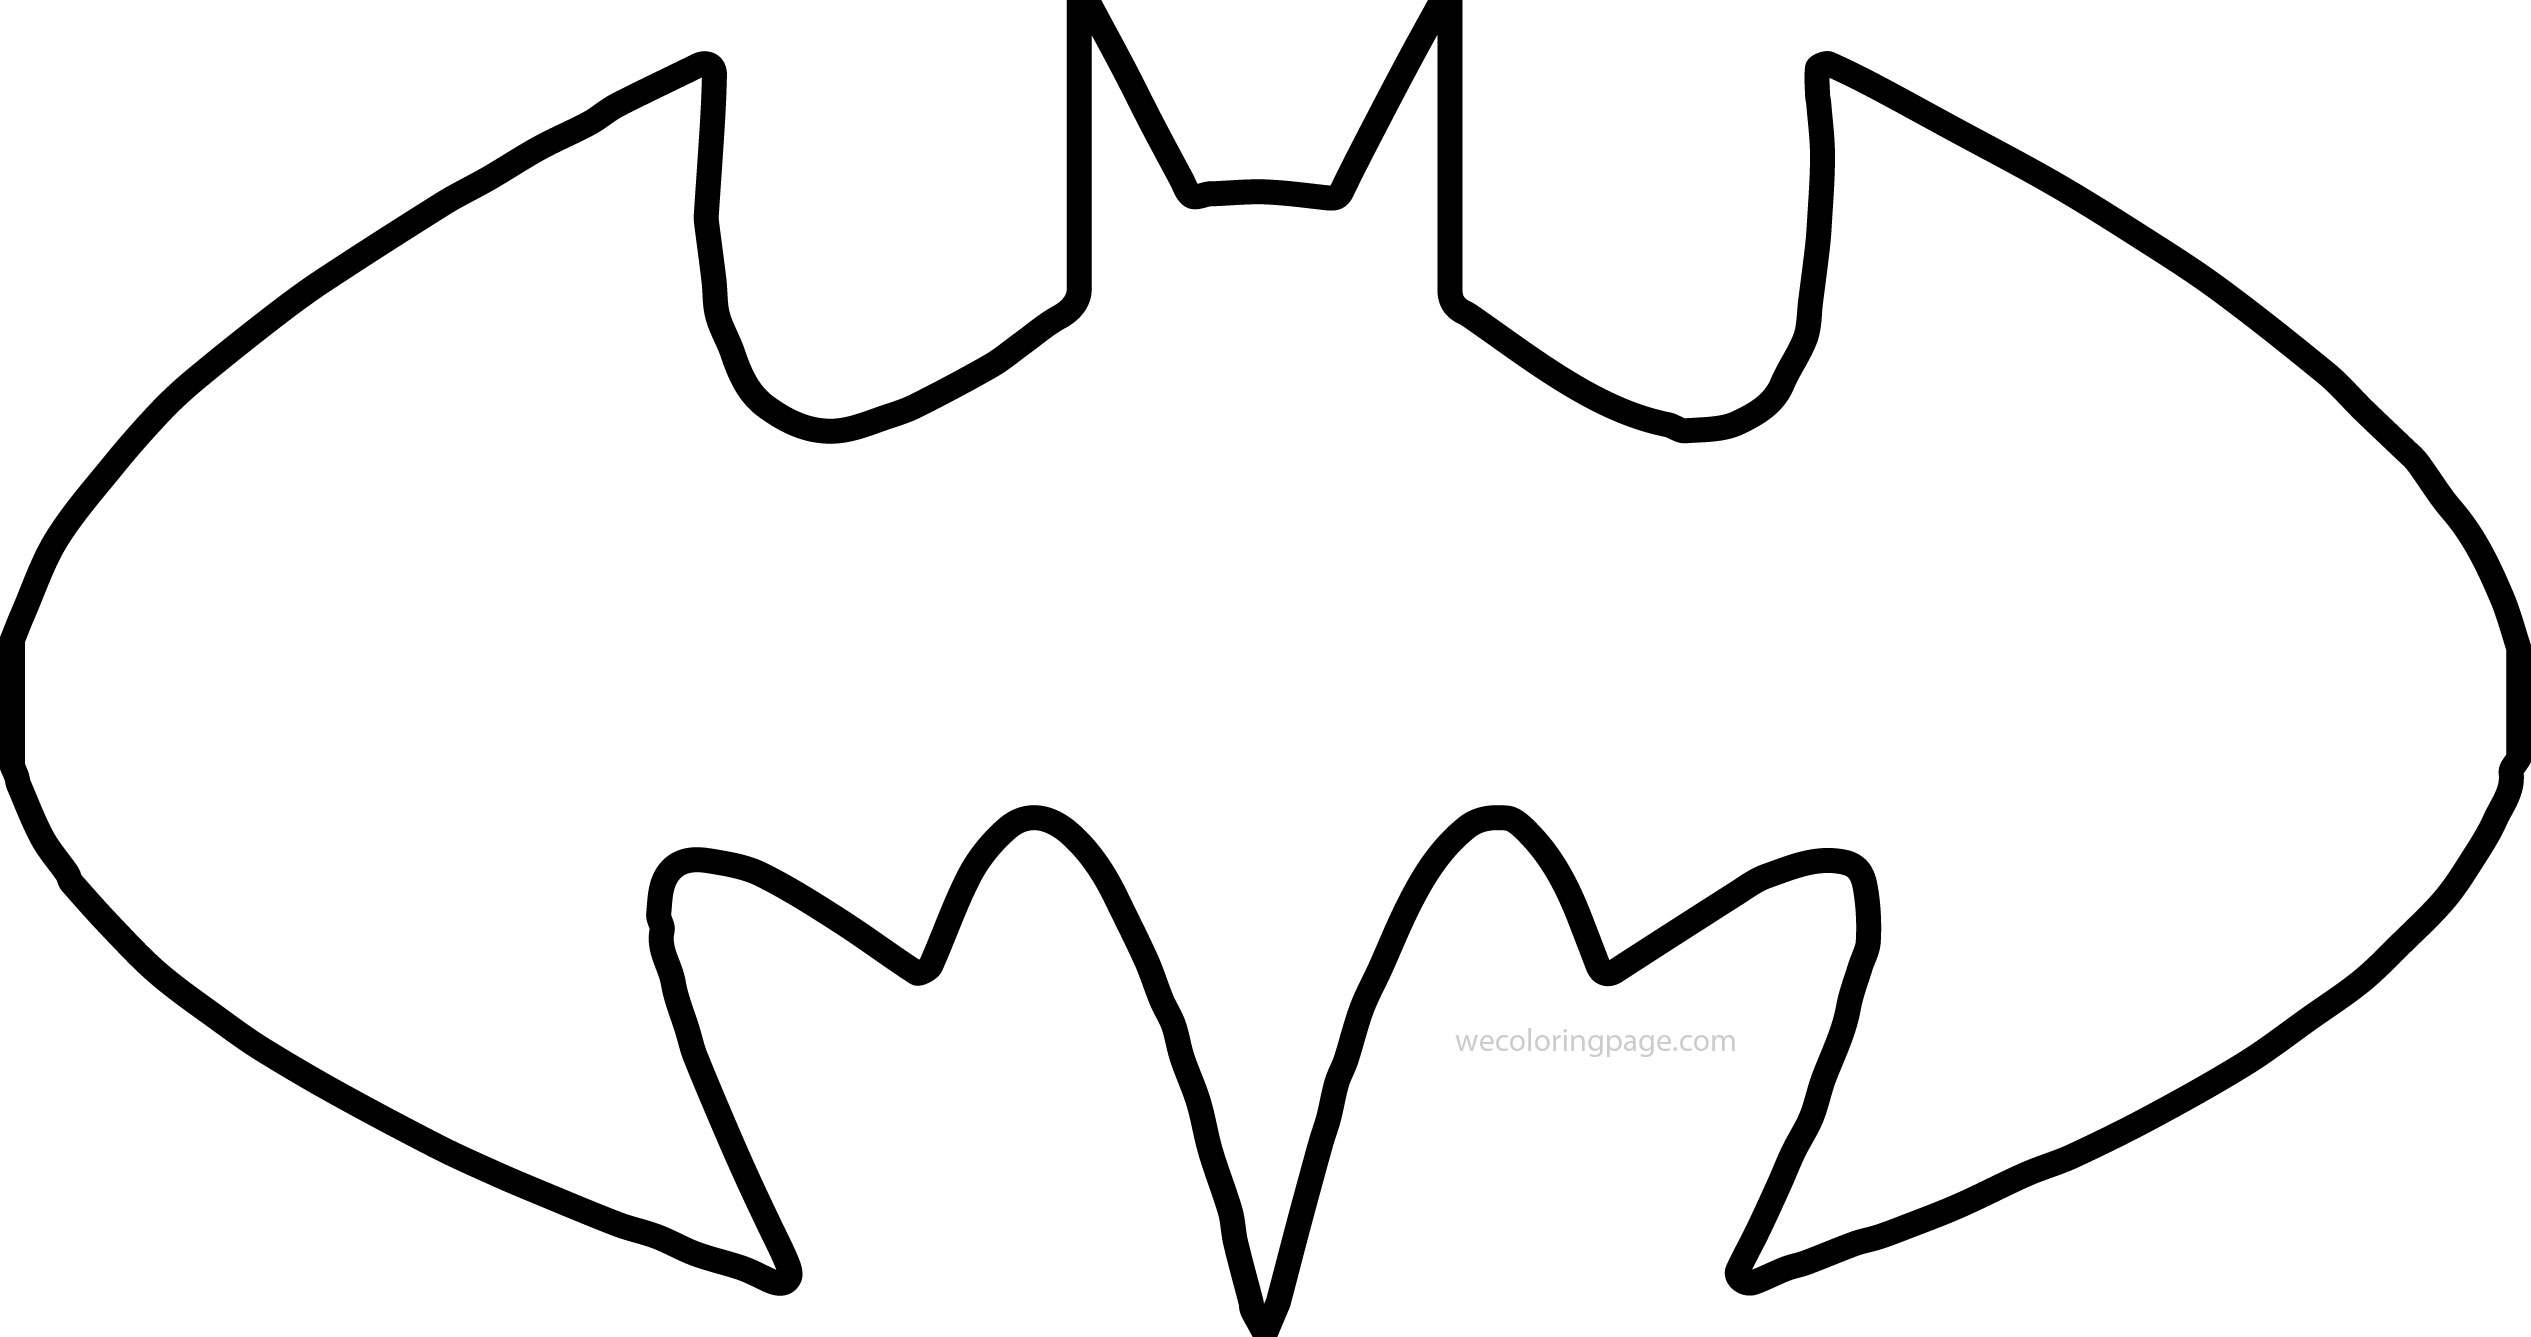 batman outline Batman shape outline coloring page wecoloringpage jpg